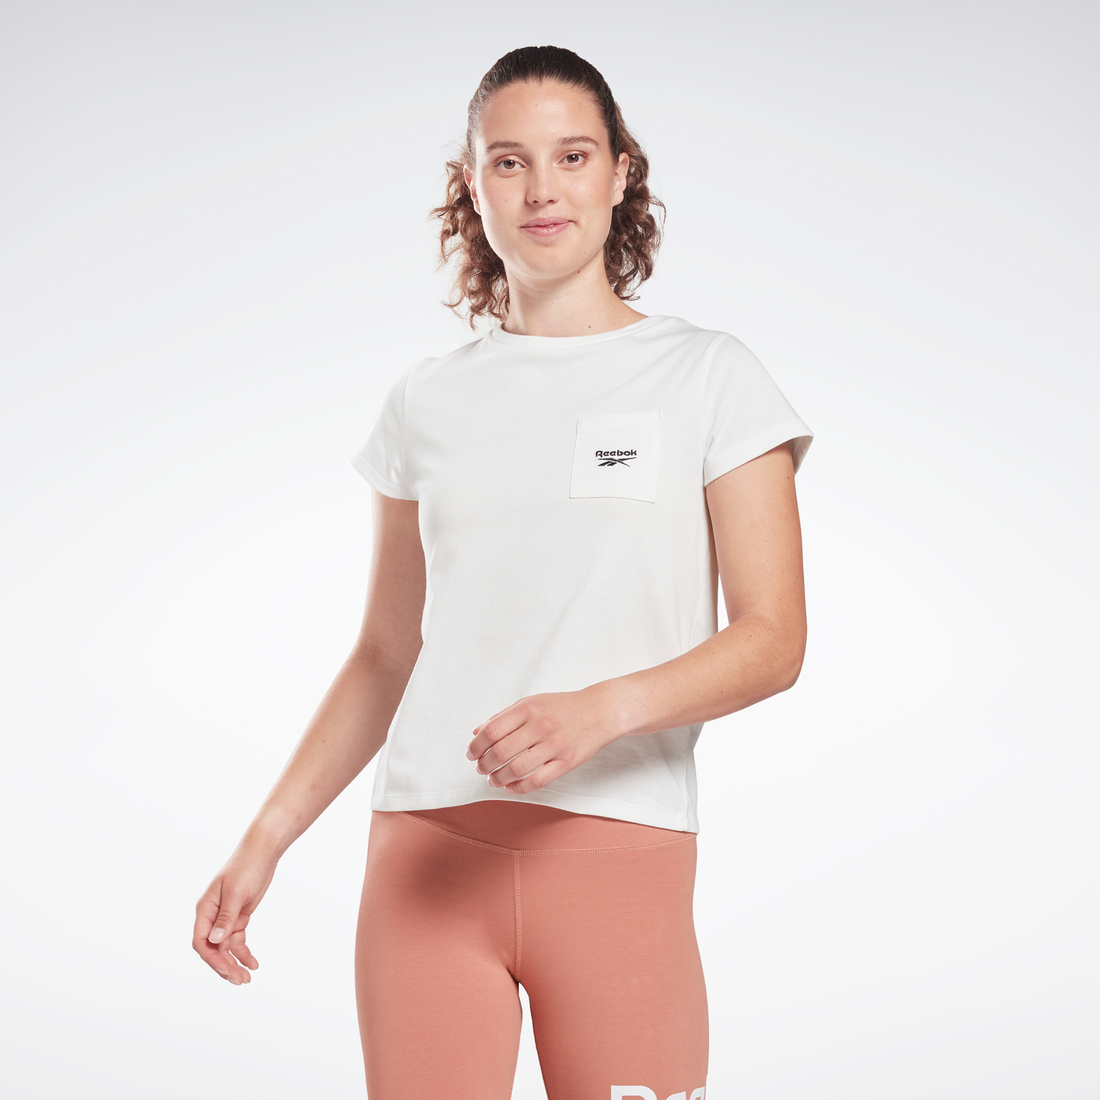 アイデンティティ ポケット Tシャツ / Identity Pocket T-Shirt （ホワイト） -Reebok 公式オンラインショップ